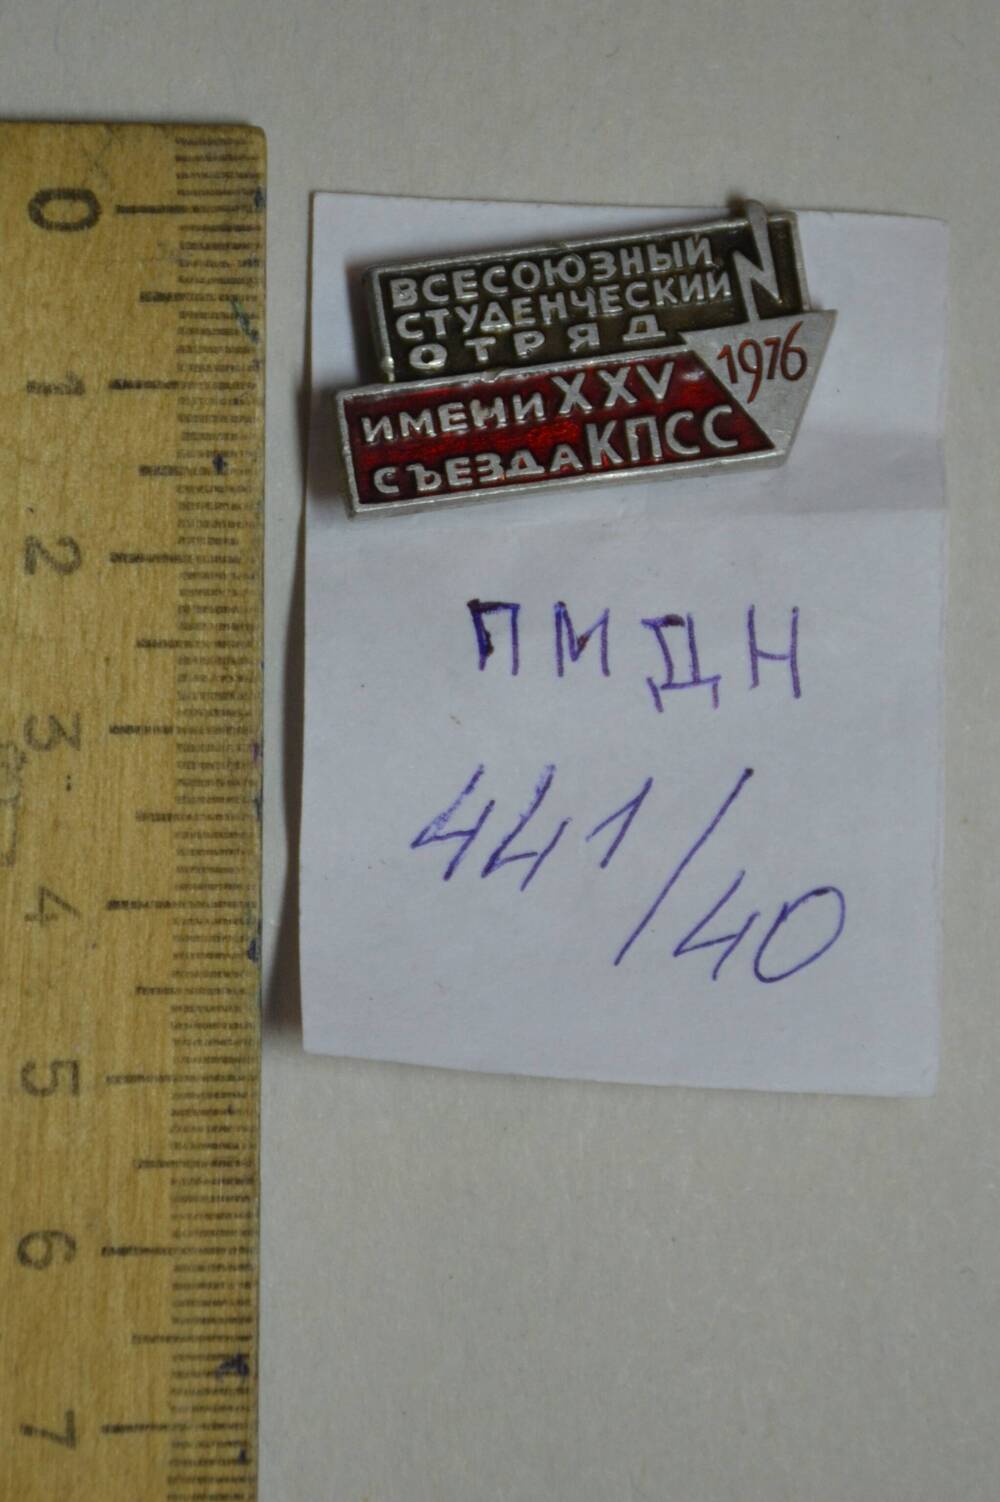 Значок «Всесоюзный студенческий отряд имени ХХV съезда КПСС».